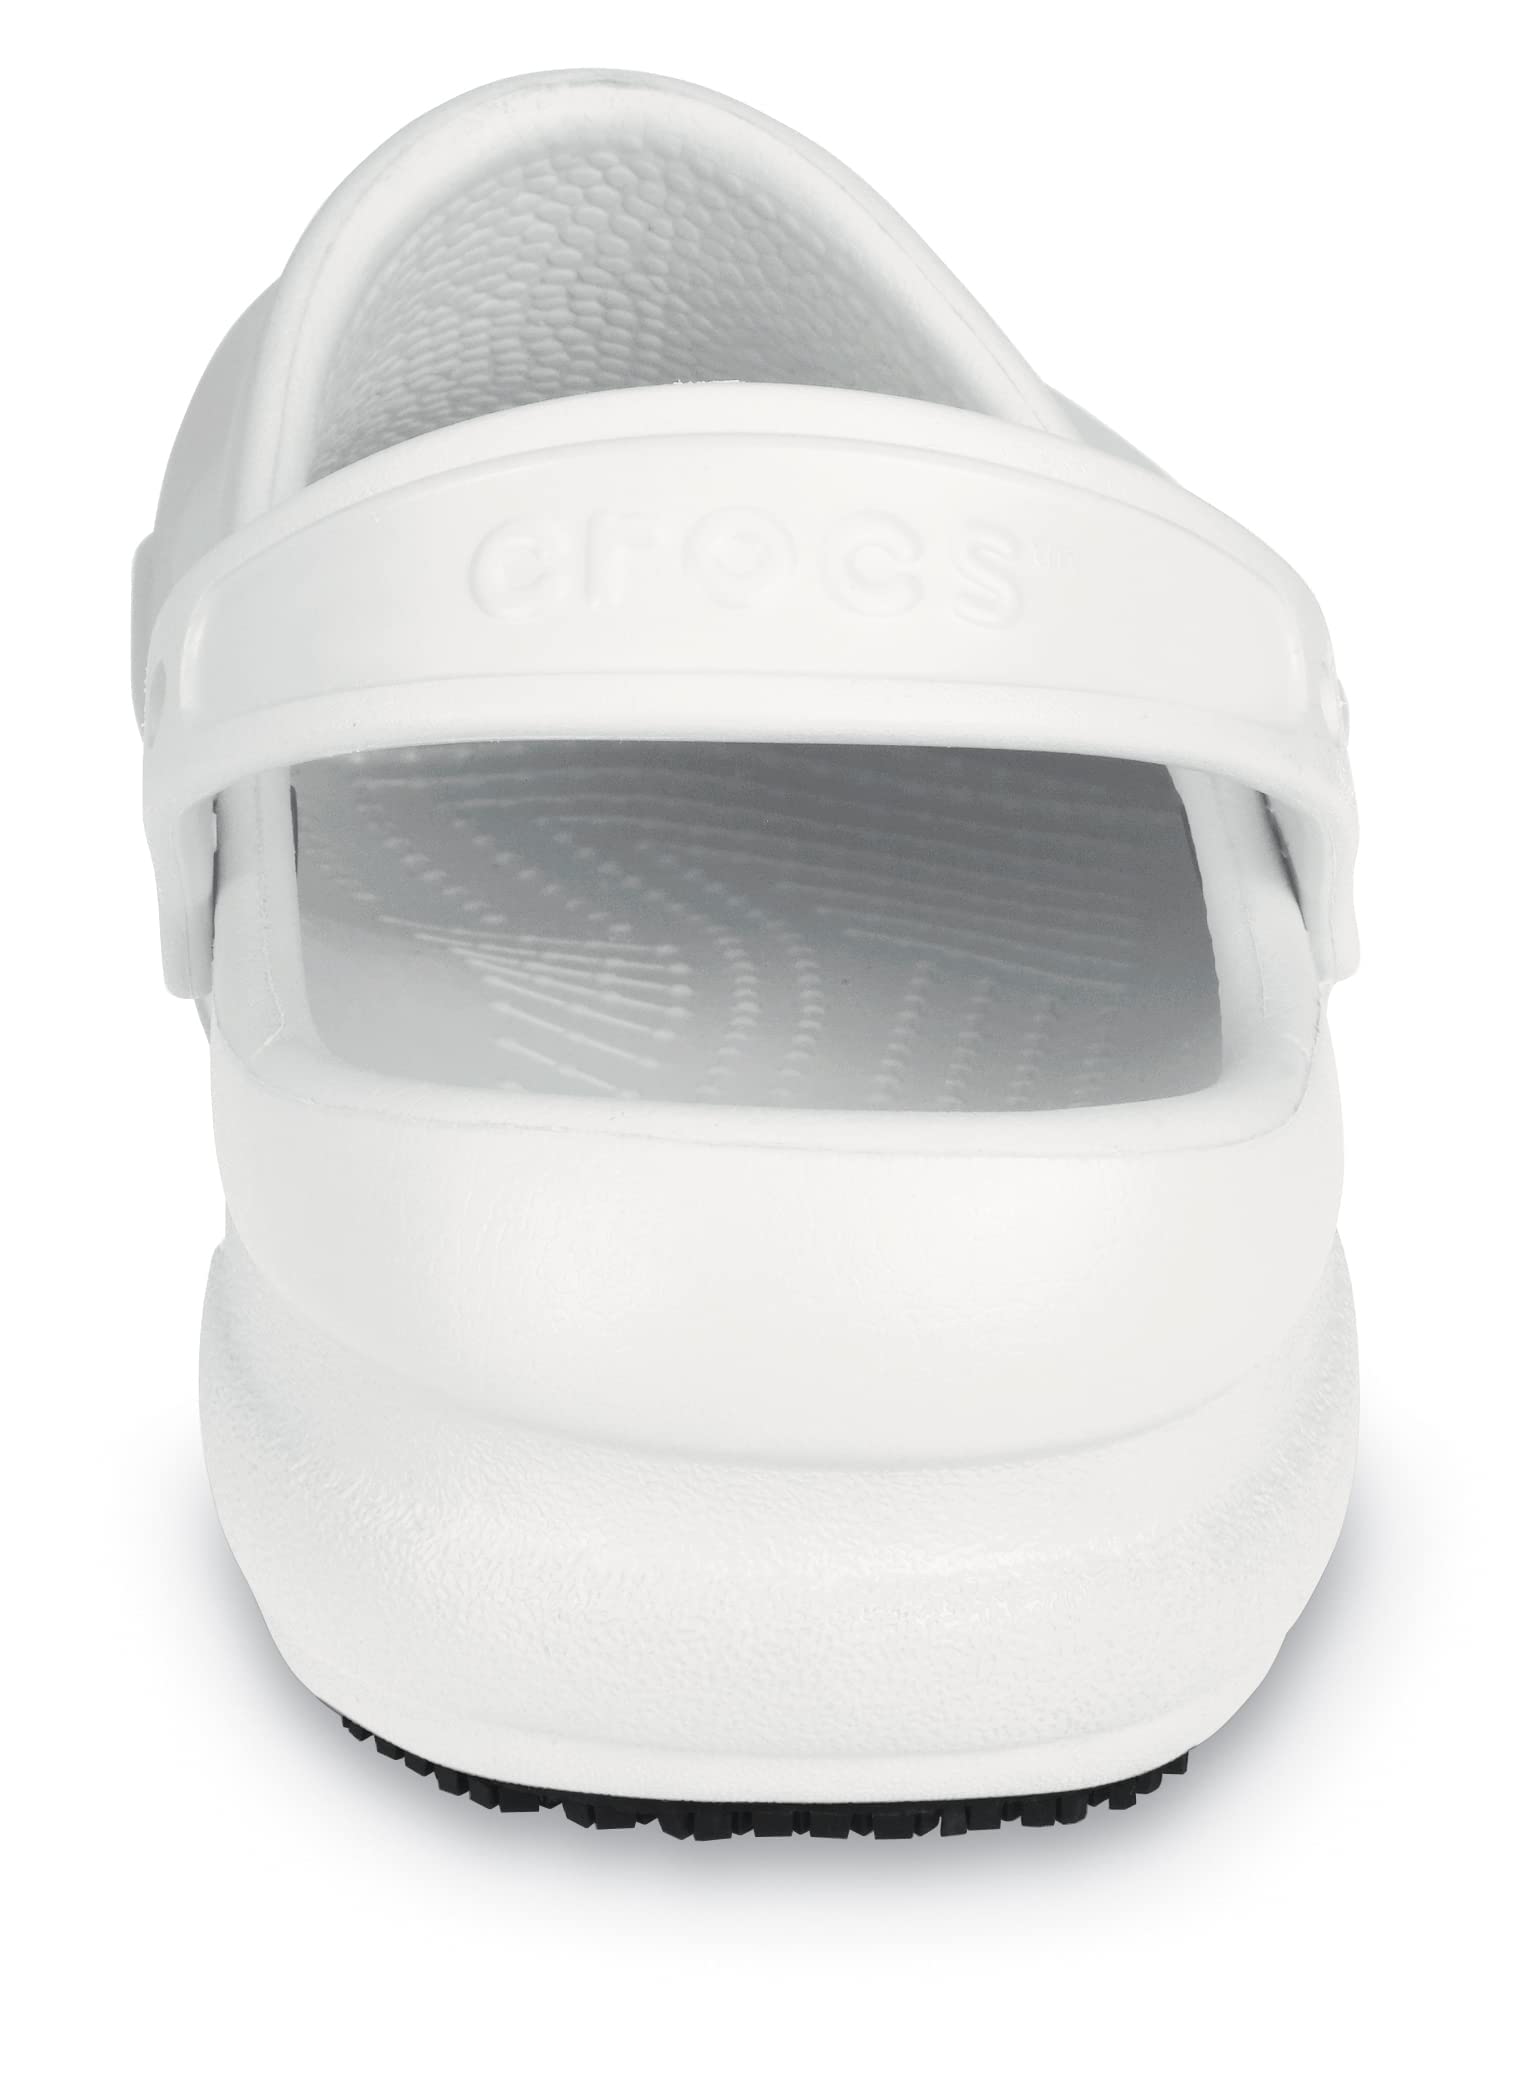 Crocs Unisex-Adult Bistro Clogs, Slip Resistant Work Shoes